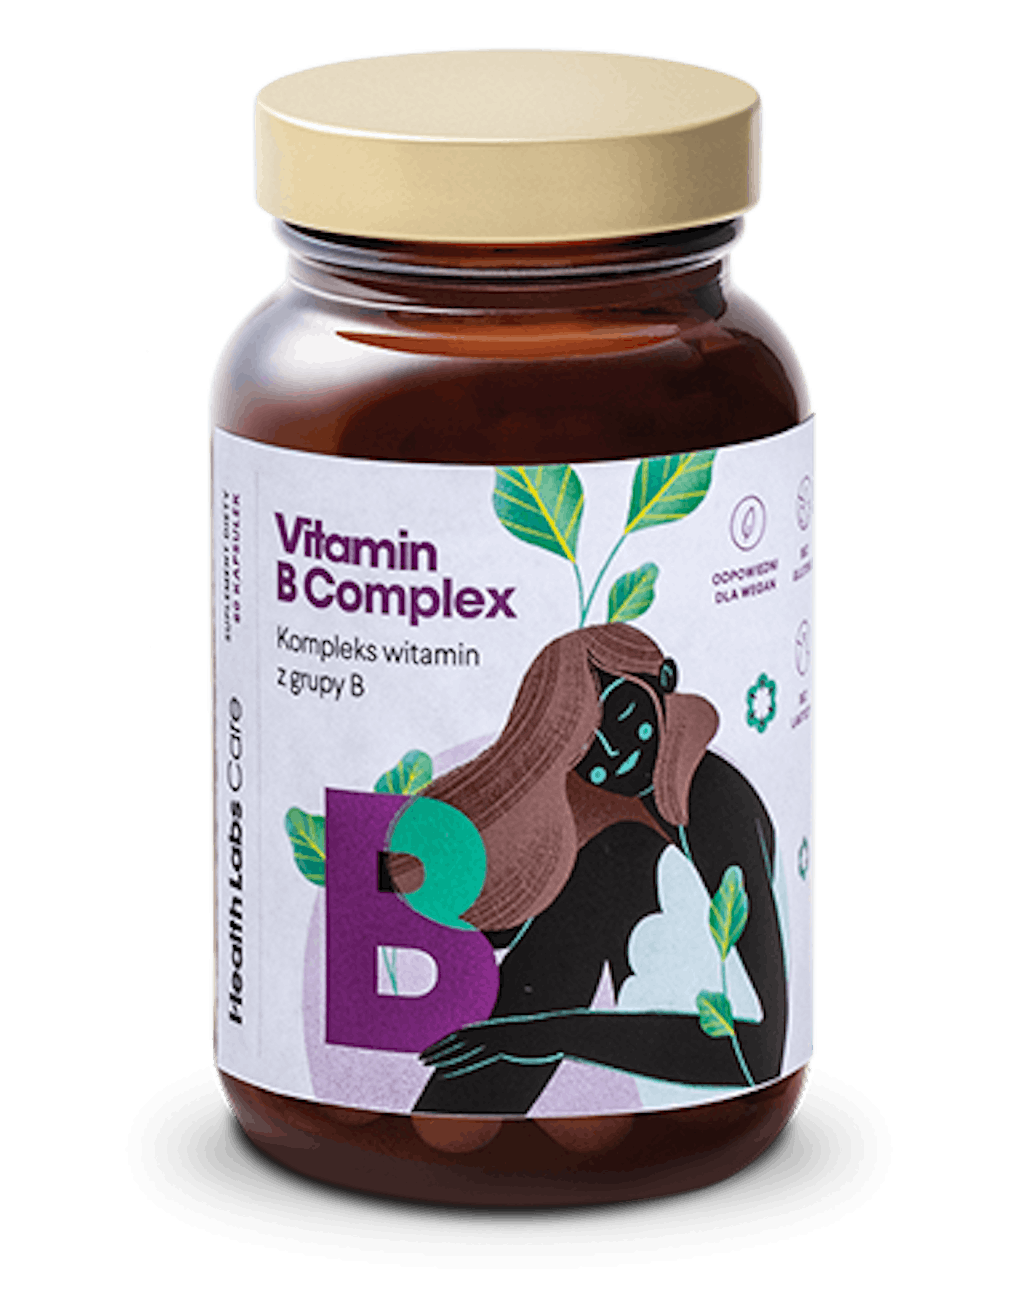 Vitamin B Complex